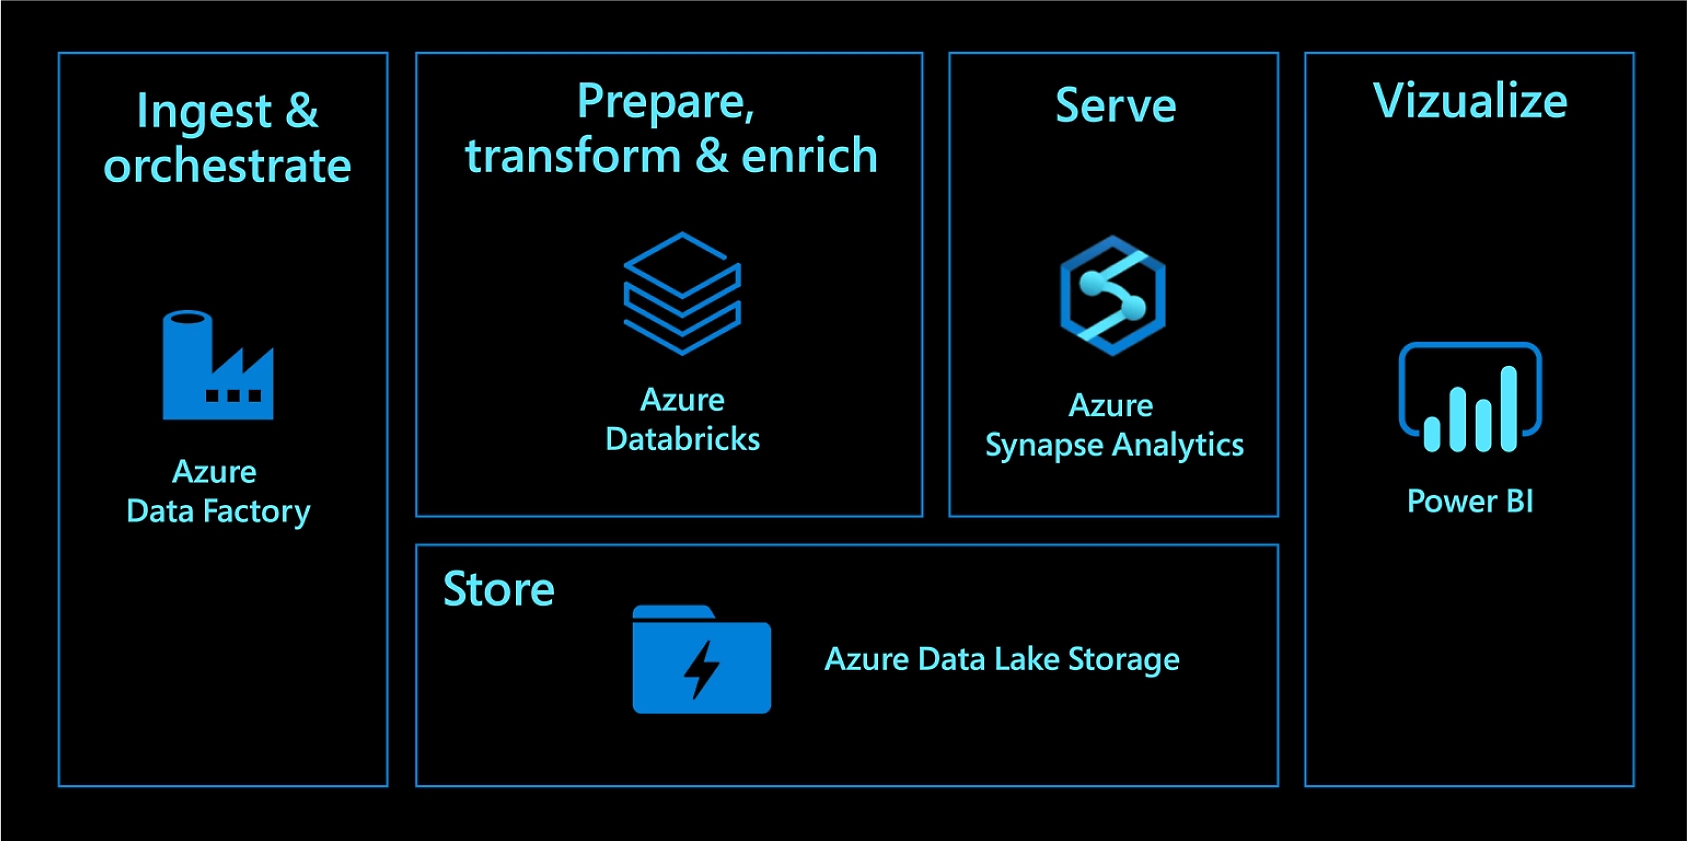 Mata in och orkestrera med Azure Data Factory. Förbered, transformera och berika med Azure Databricks. Tillhandahåll med Azure Synapse Analytics. Lagra med Azure Data Lake Storage. Visualisera med Power BI.